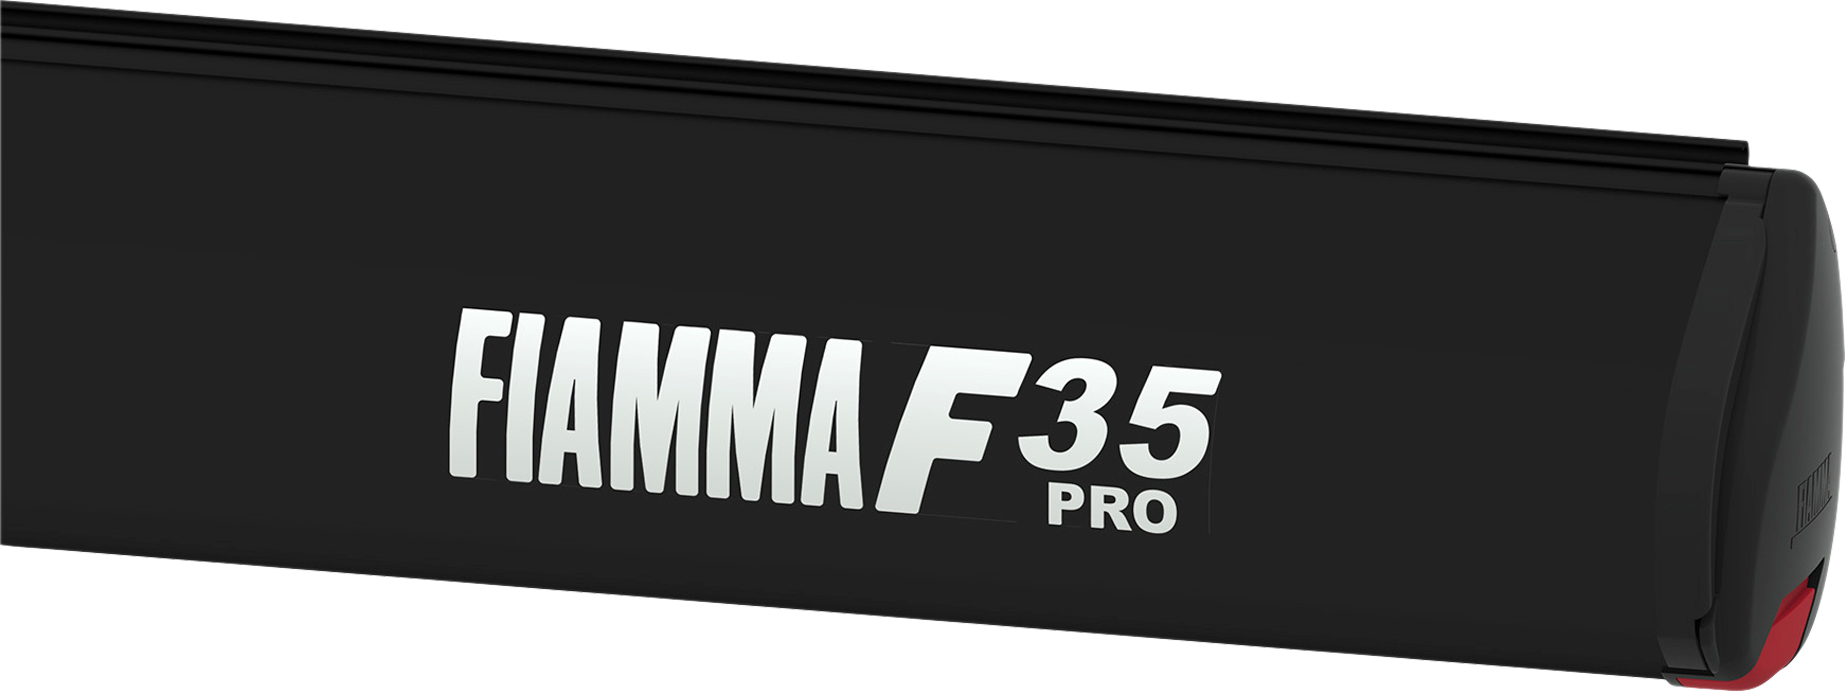 Fiamma F35 Pro Dachmarkise Gehäusefarbe Deep Black Tuchfarbe Royal Grey  jetzt bestellen!